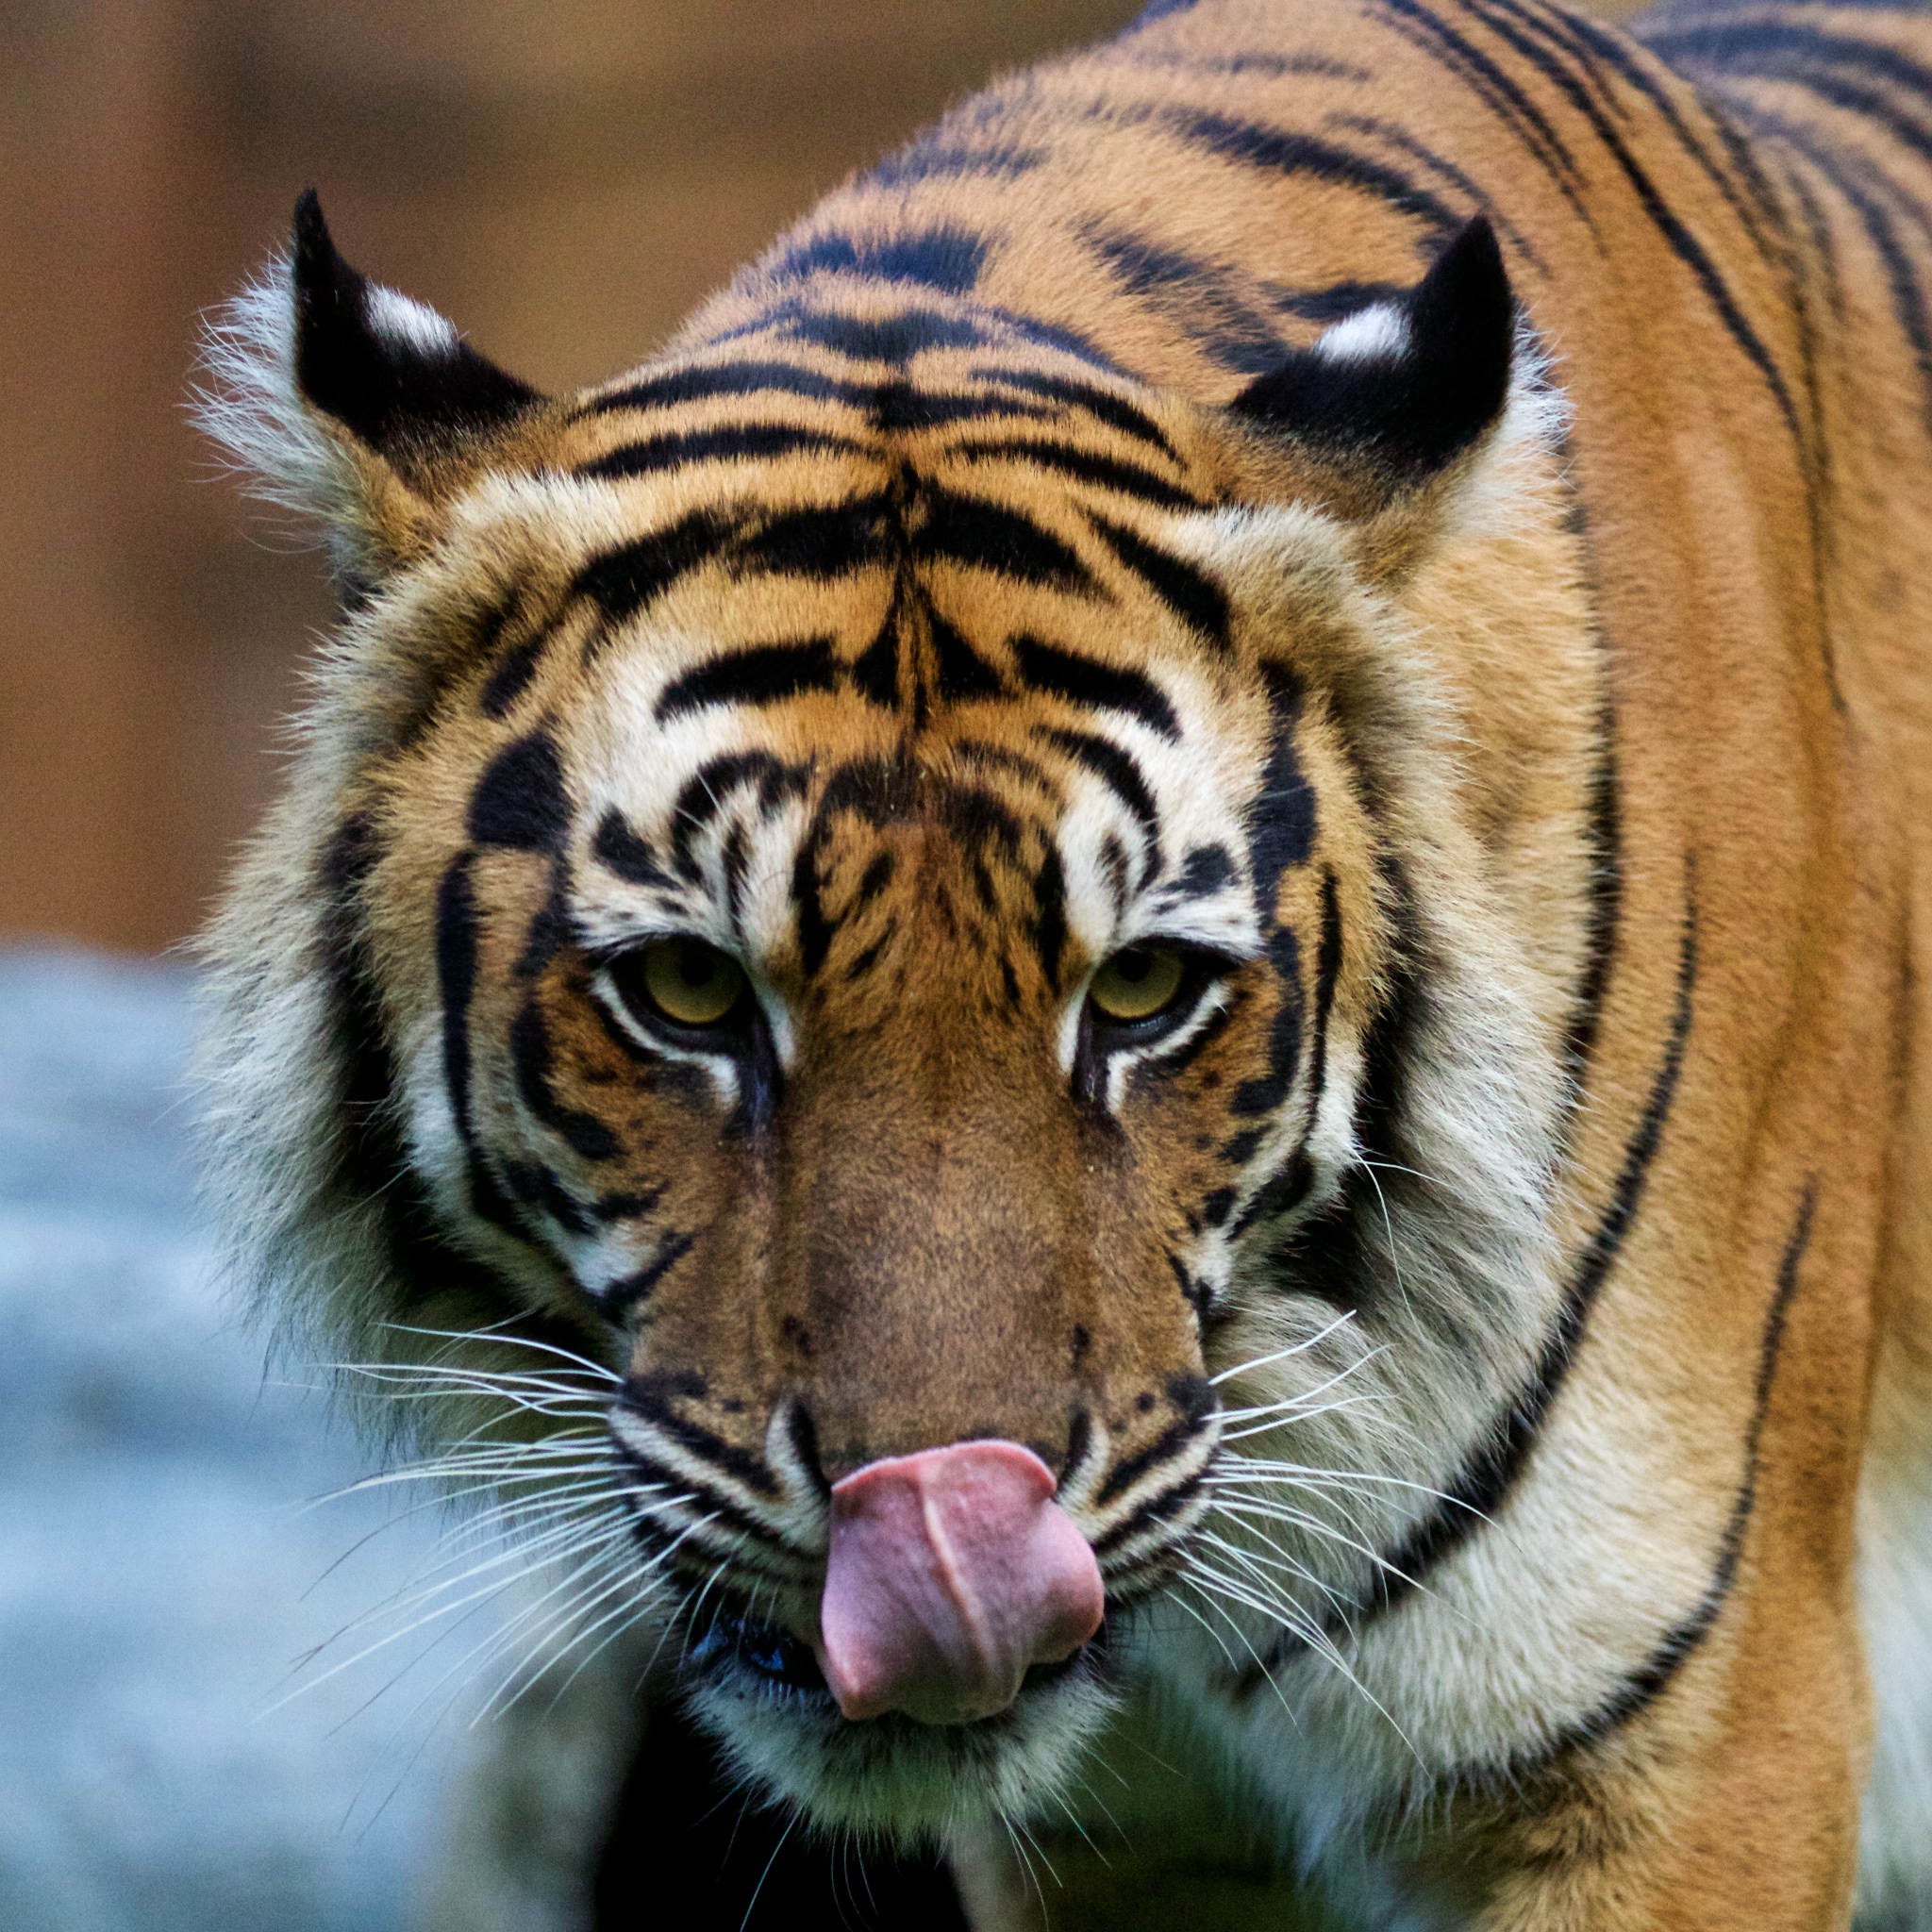 Tiger licking nose